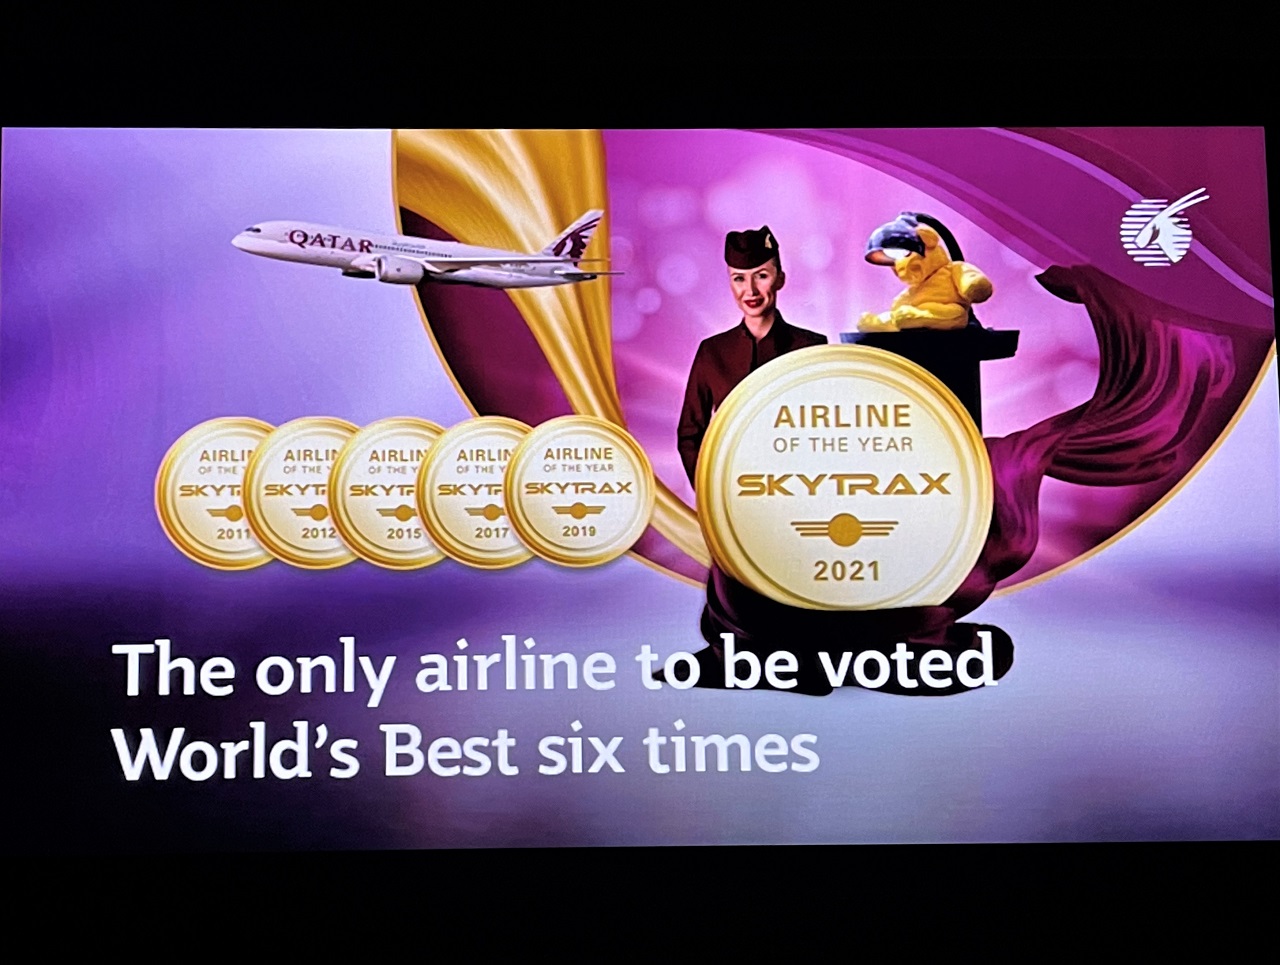 カタール航空、スカイトラックスのベストエアライン受賞の画面